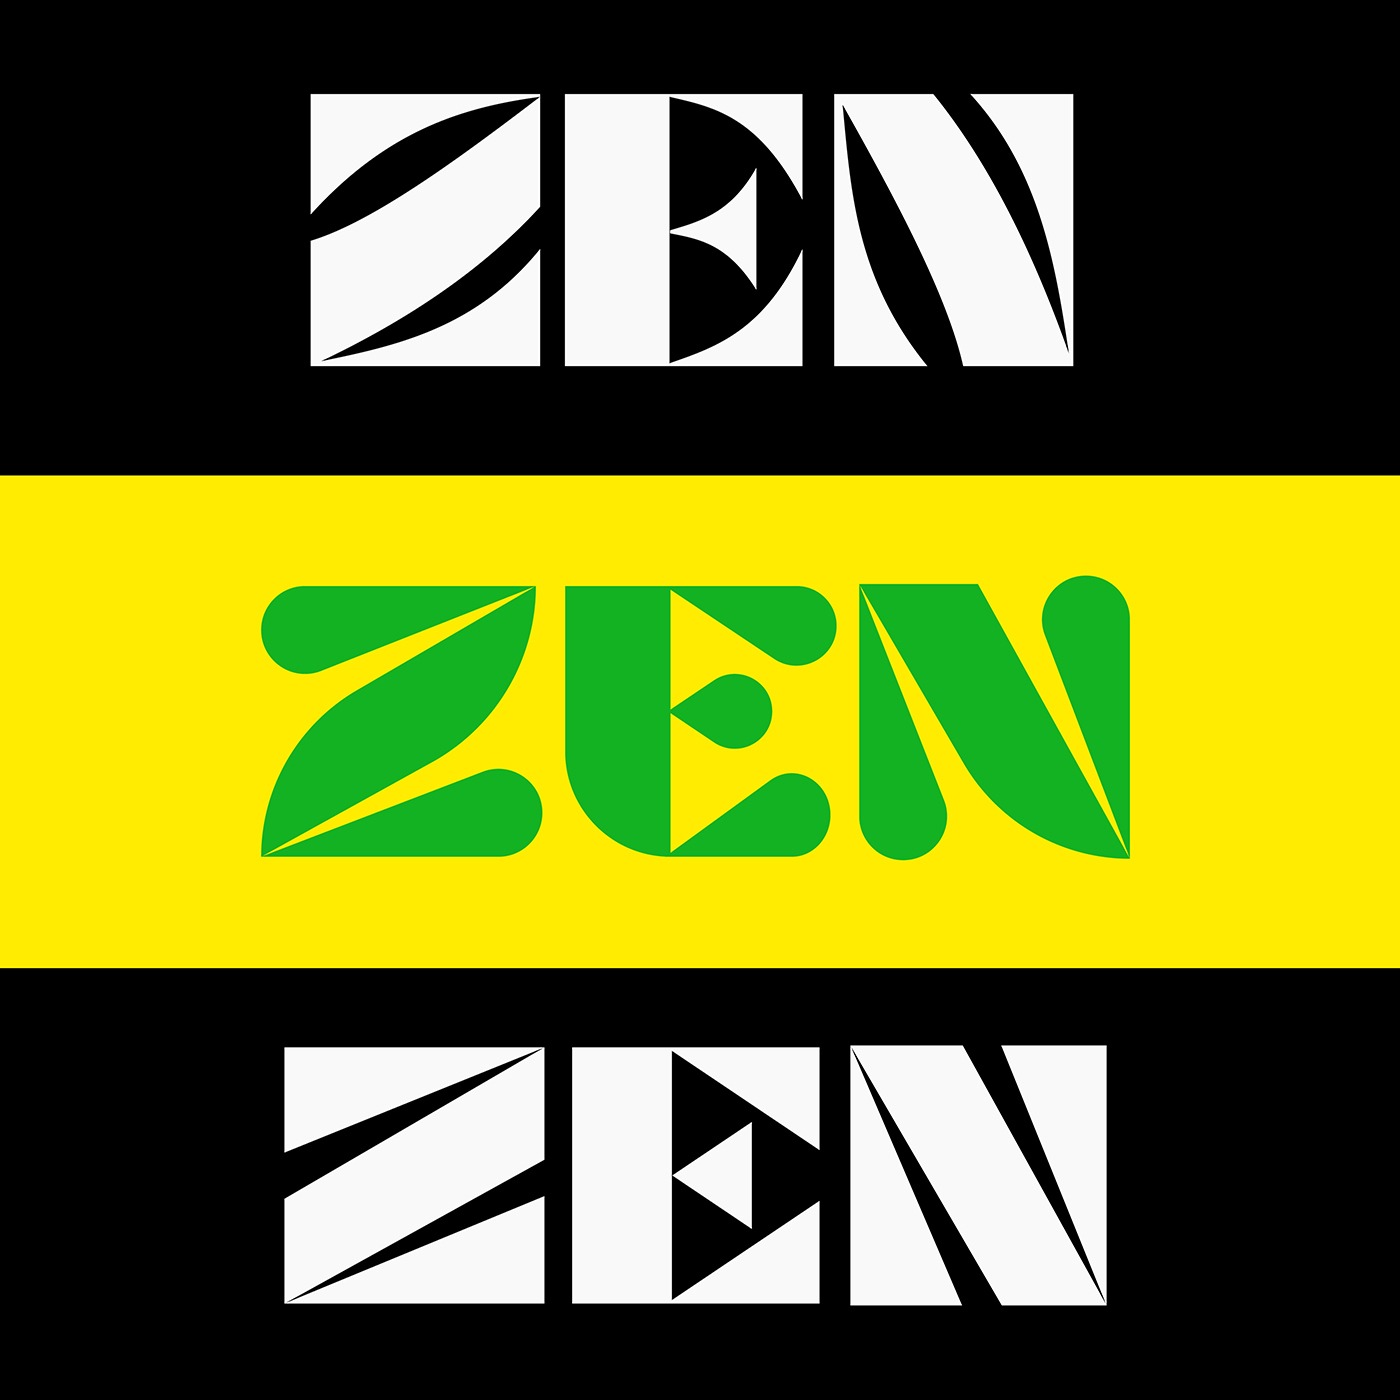 _0001_ZEN-01